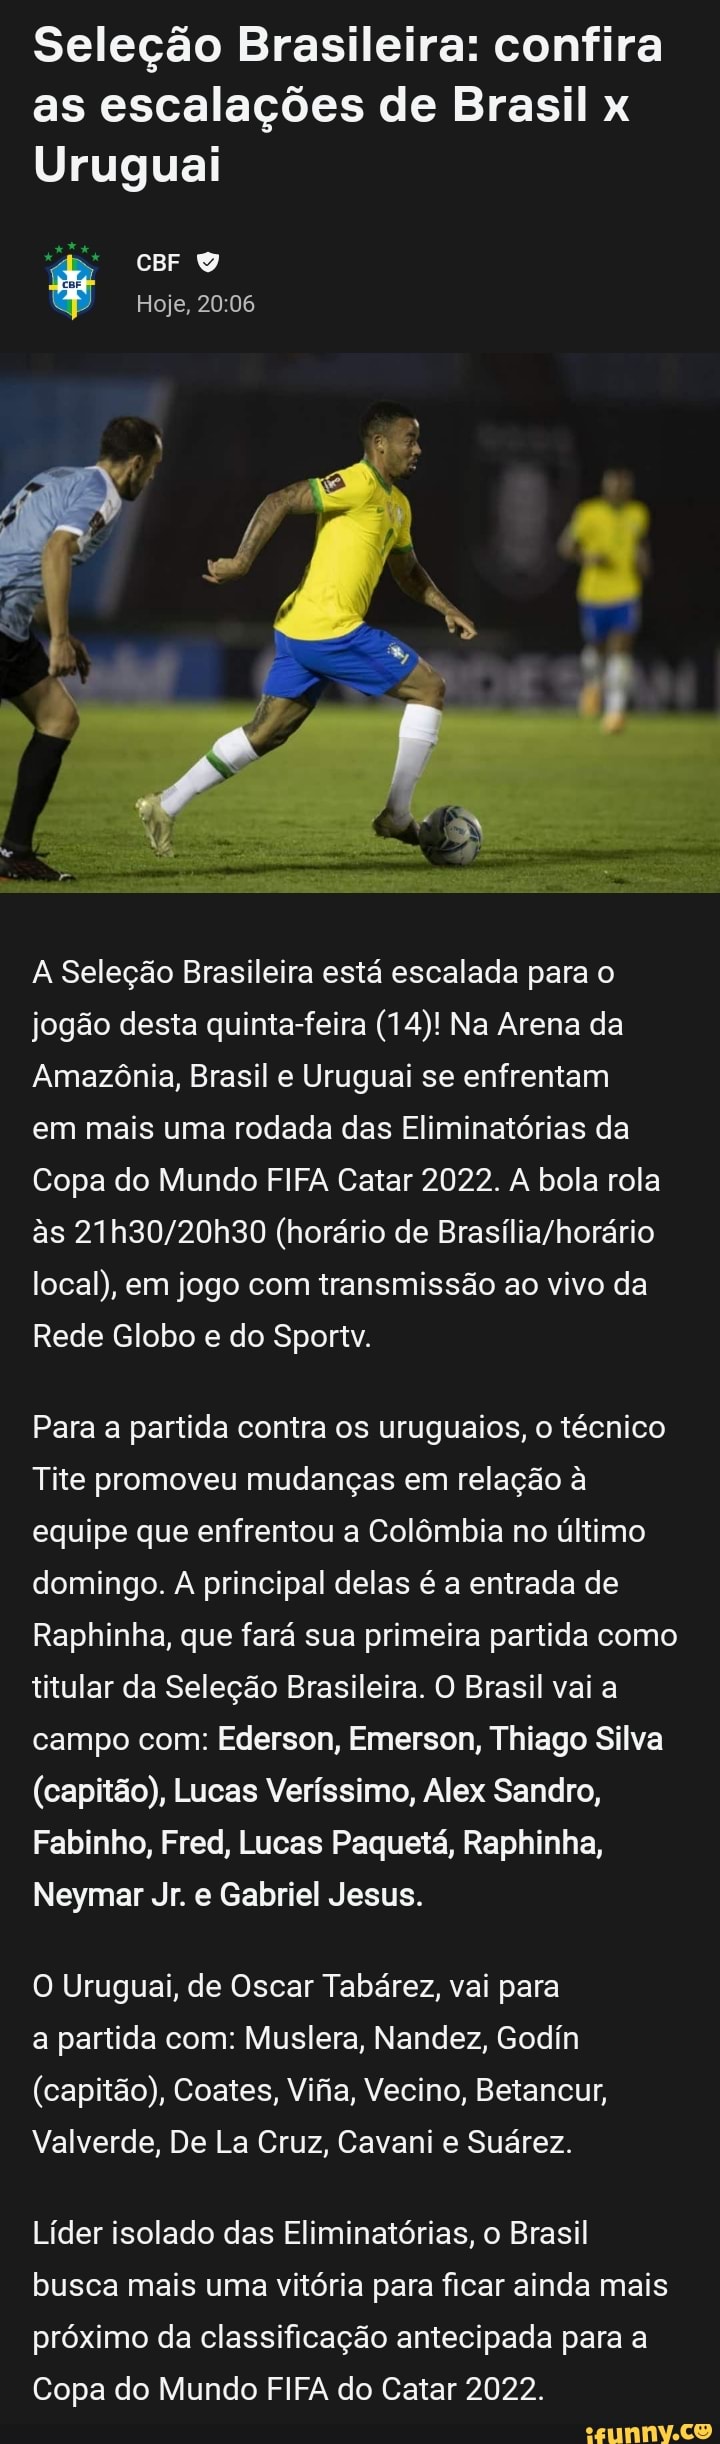 Confira as transmissões para o Brasil da última semana da